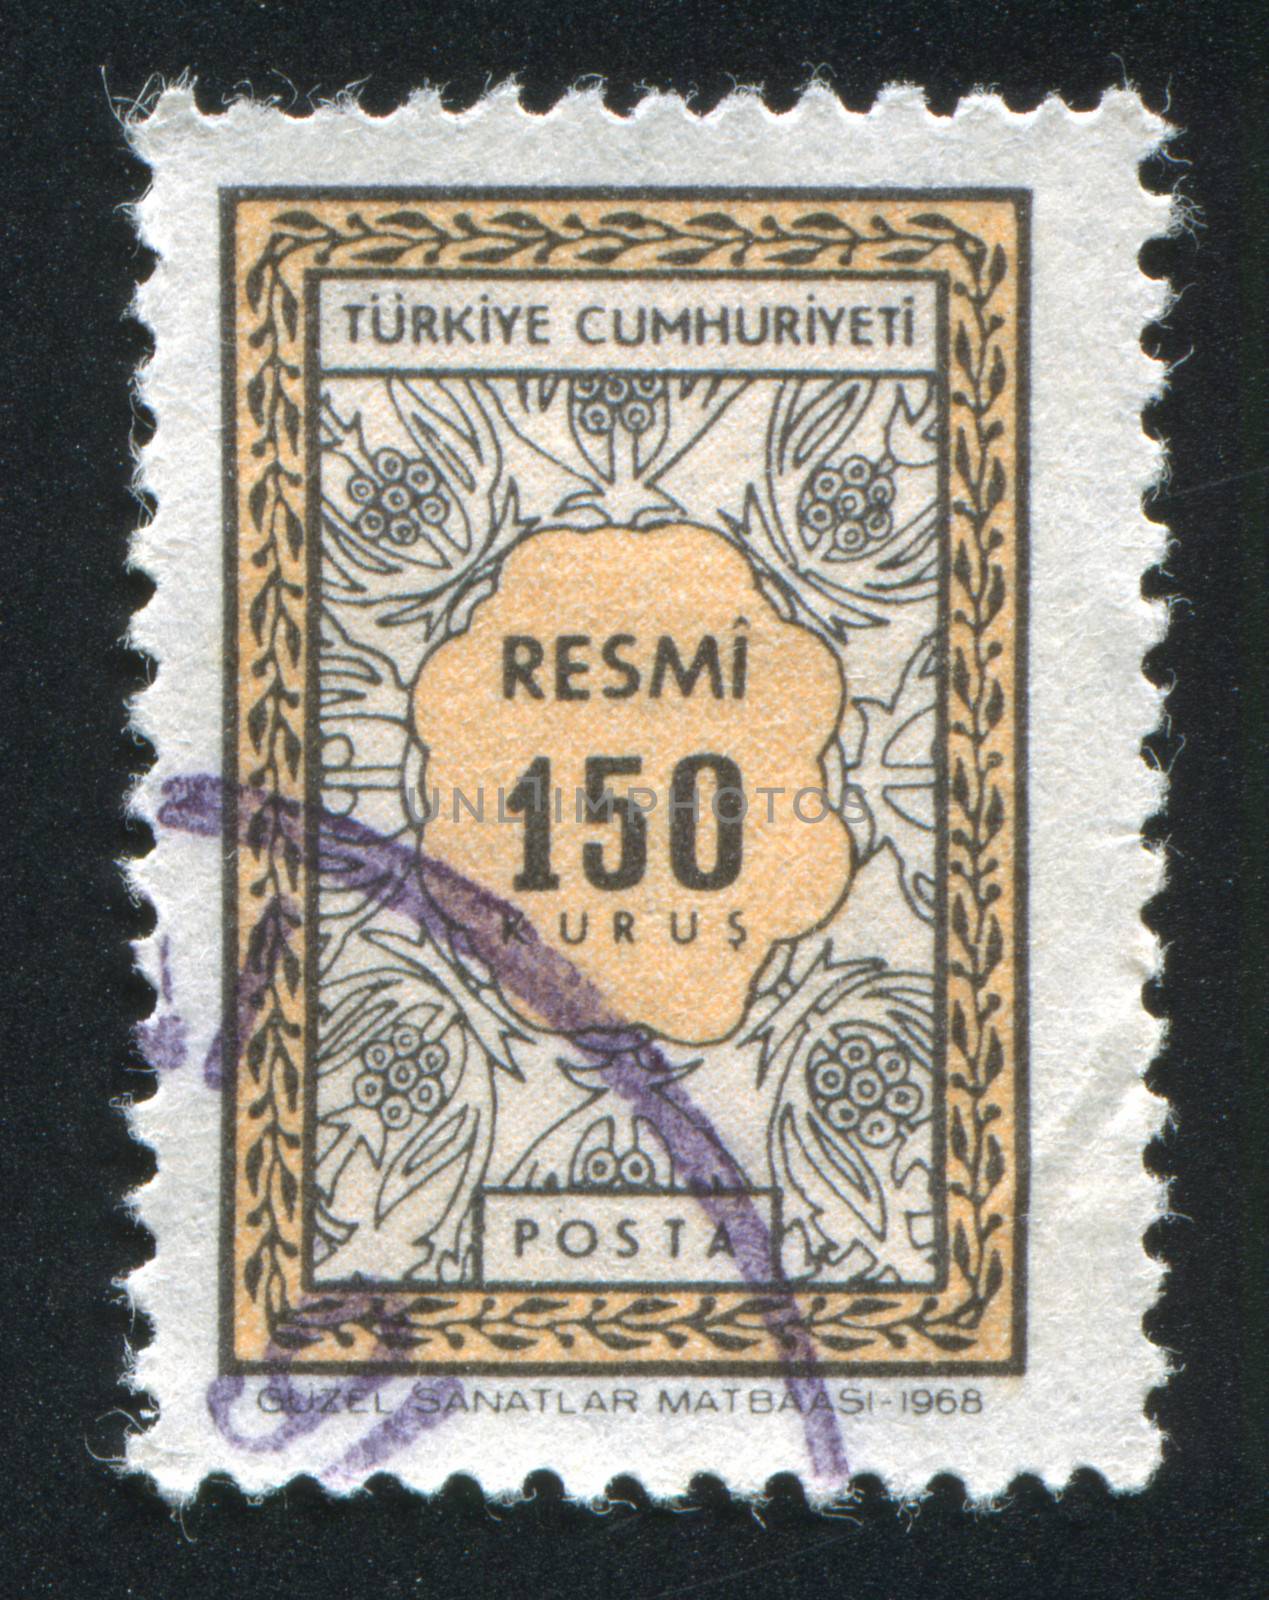 TURKEY - CIRCA 1968: stamp printed by Turkey, shows turkish pattern, circa 1968.